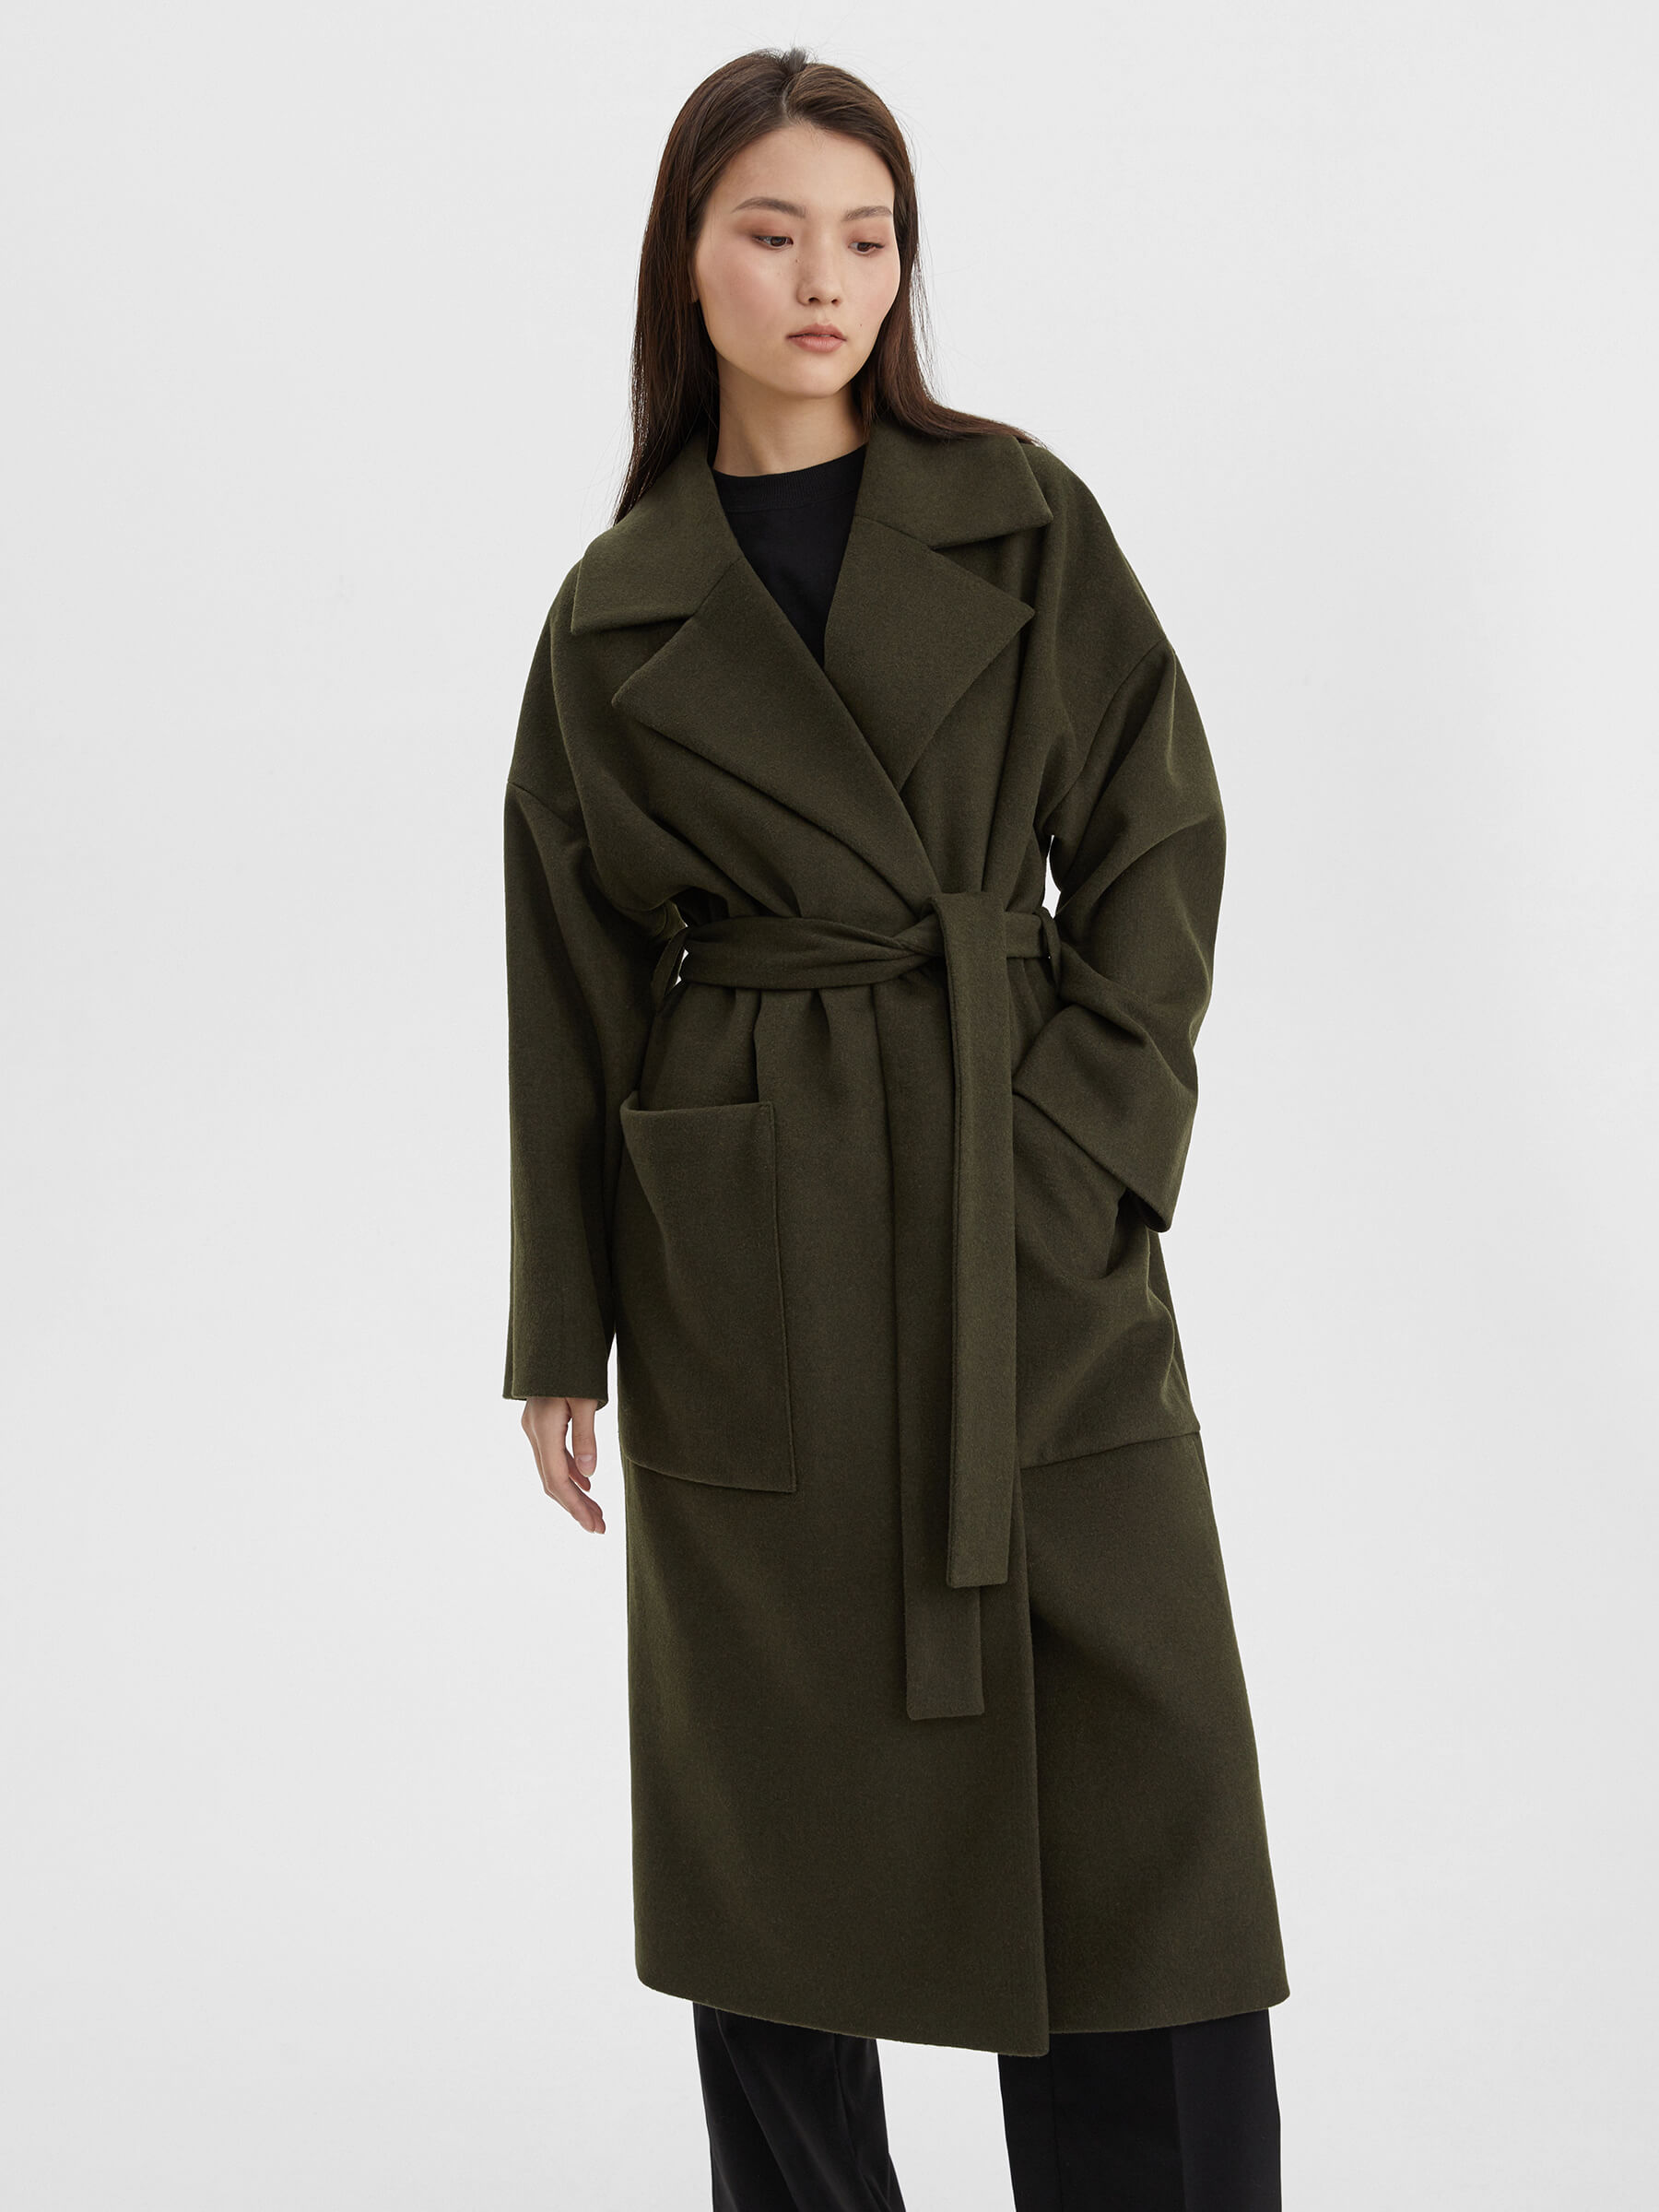 Пальто женское длинное с объемными карманами и поясом, цвет – хаки женское шерстяное пальто короткая куртка цвета хаки с отложным воротником и длинным рукавом в корейском стиле осень зима 2022